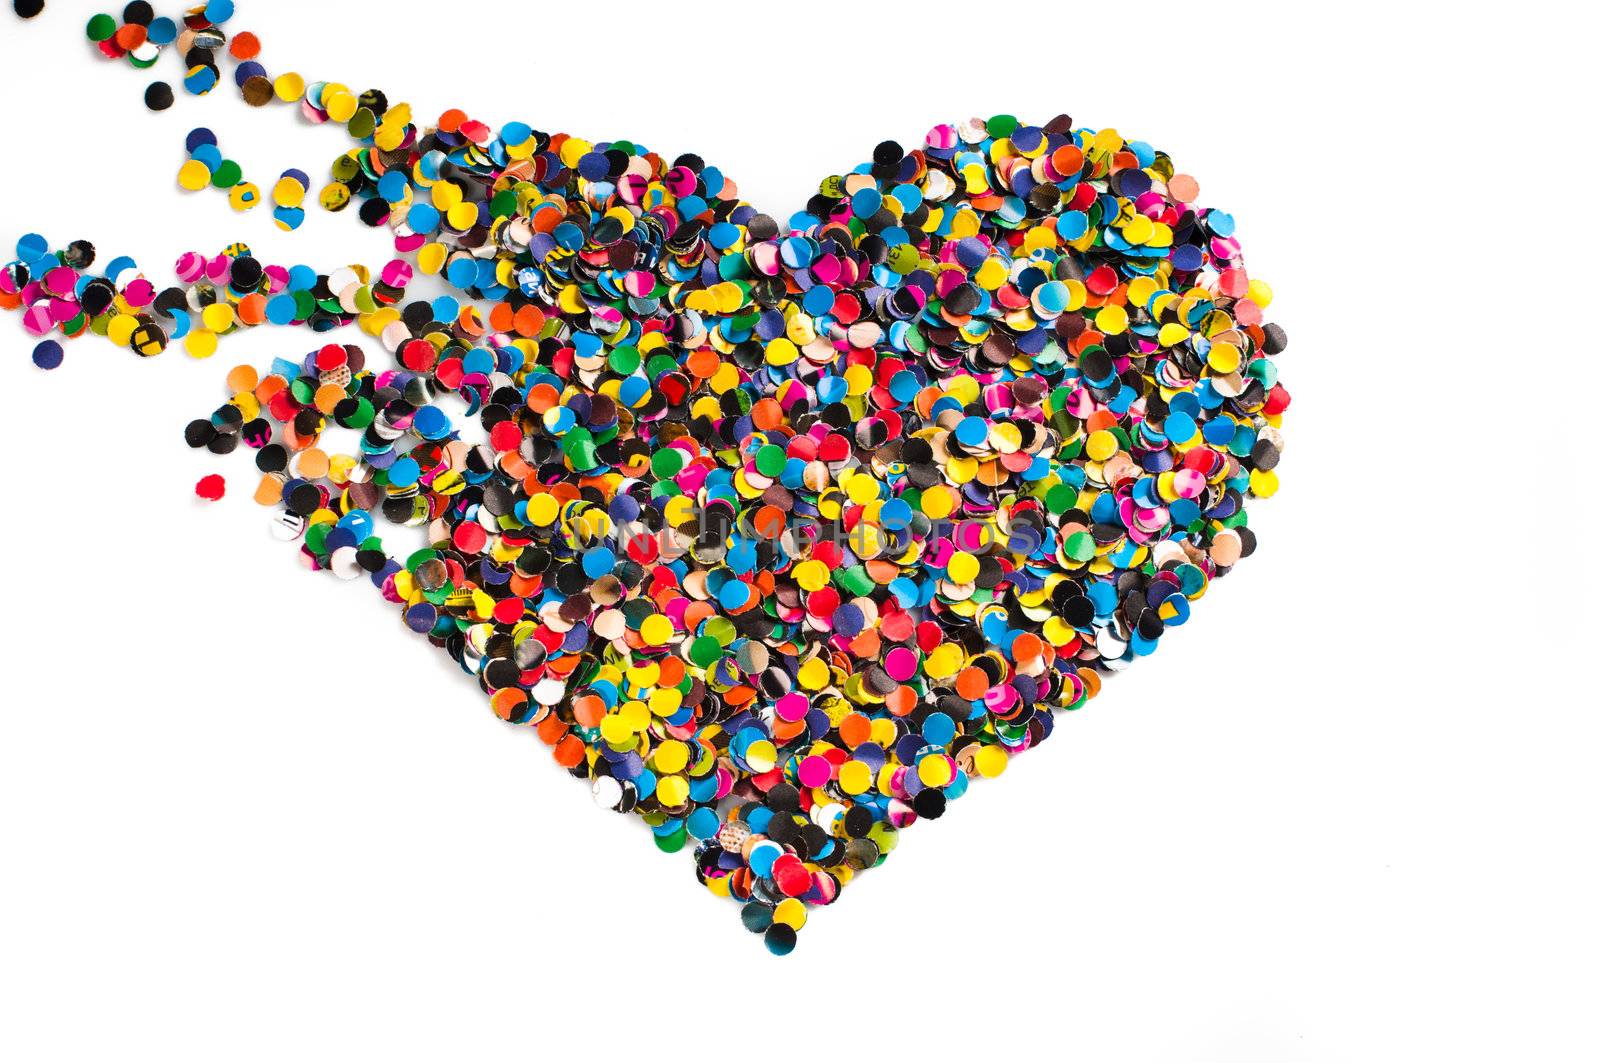 Broken confetti heart by nvelichko